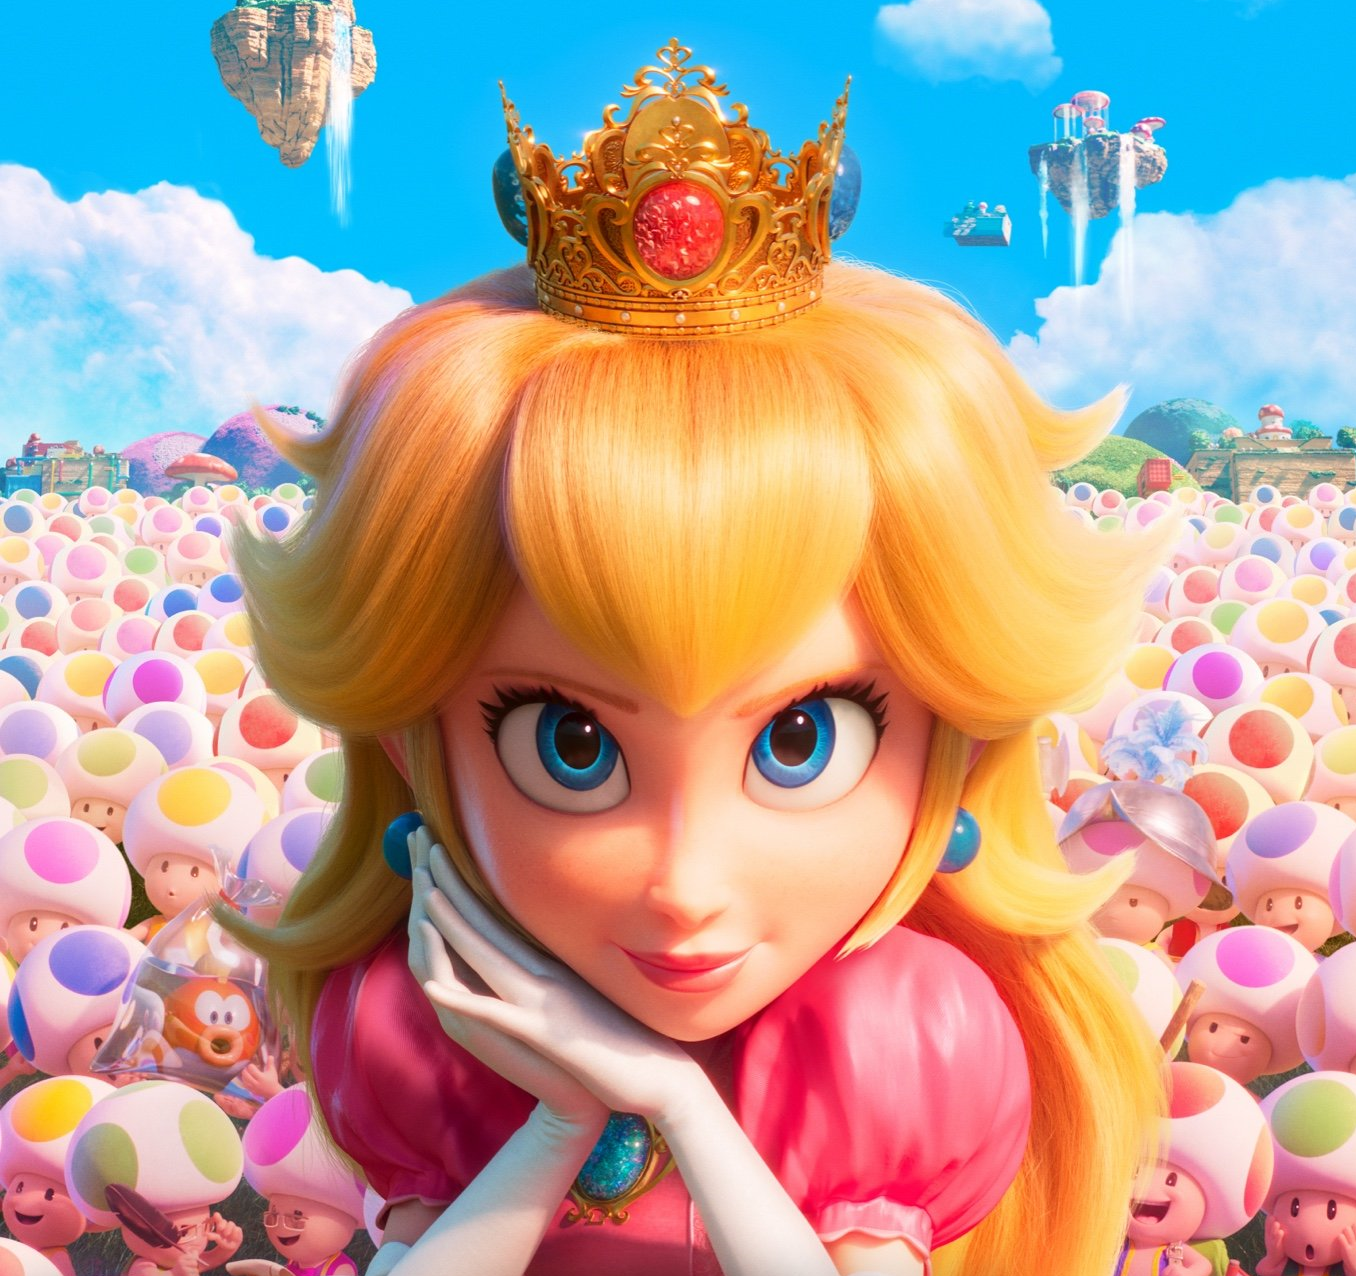 Princesa Peach é destaque em nova cena de “SUPER MARIO BROS – O